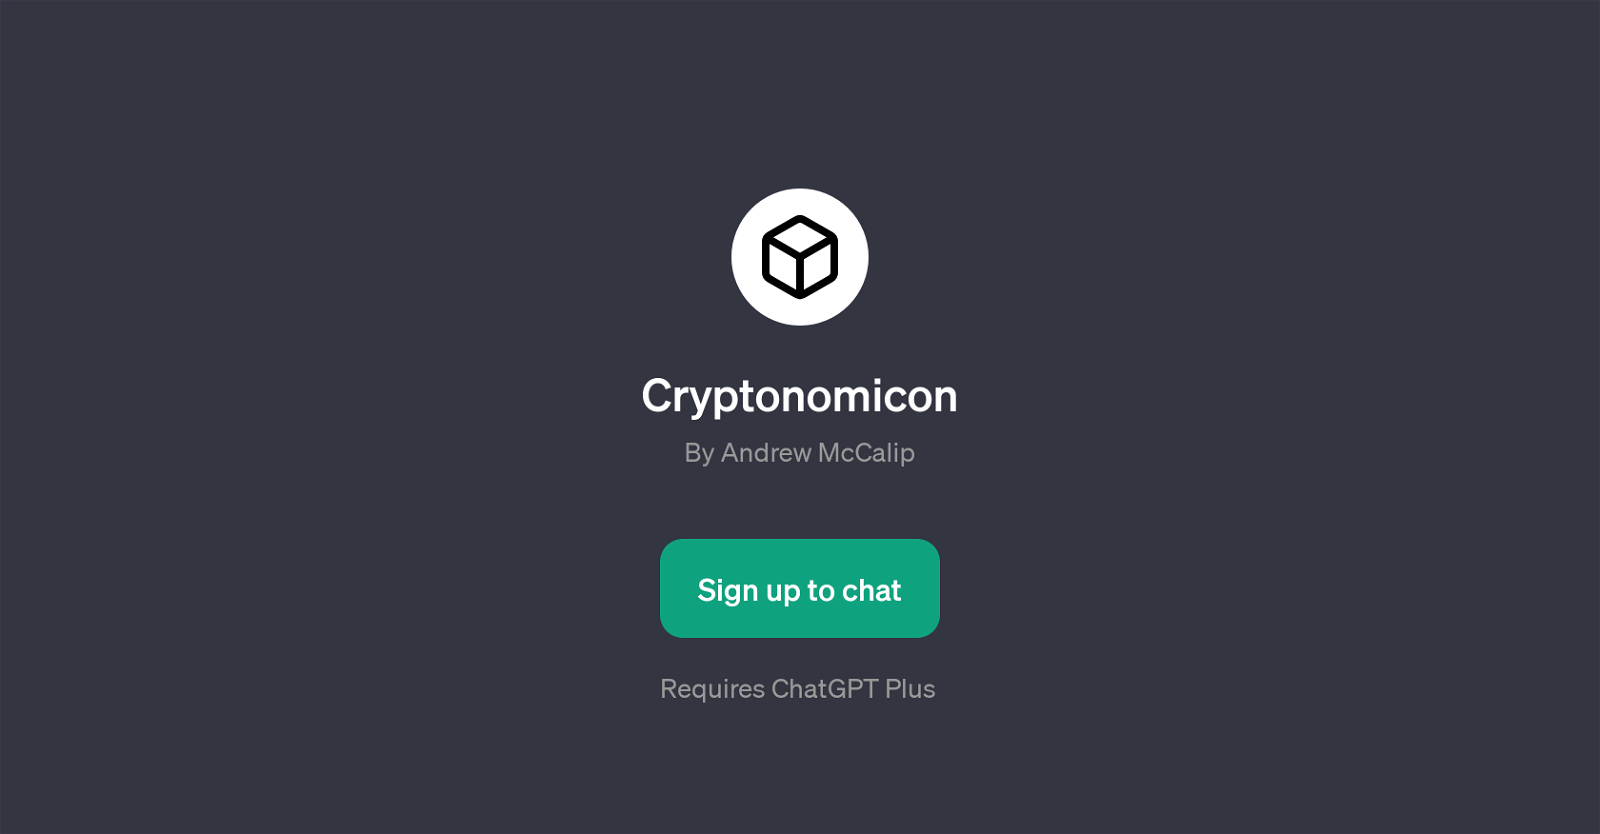 Cryptonomicon website